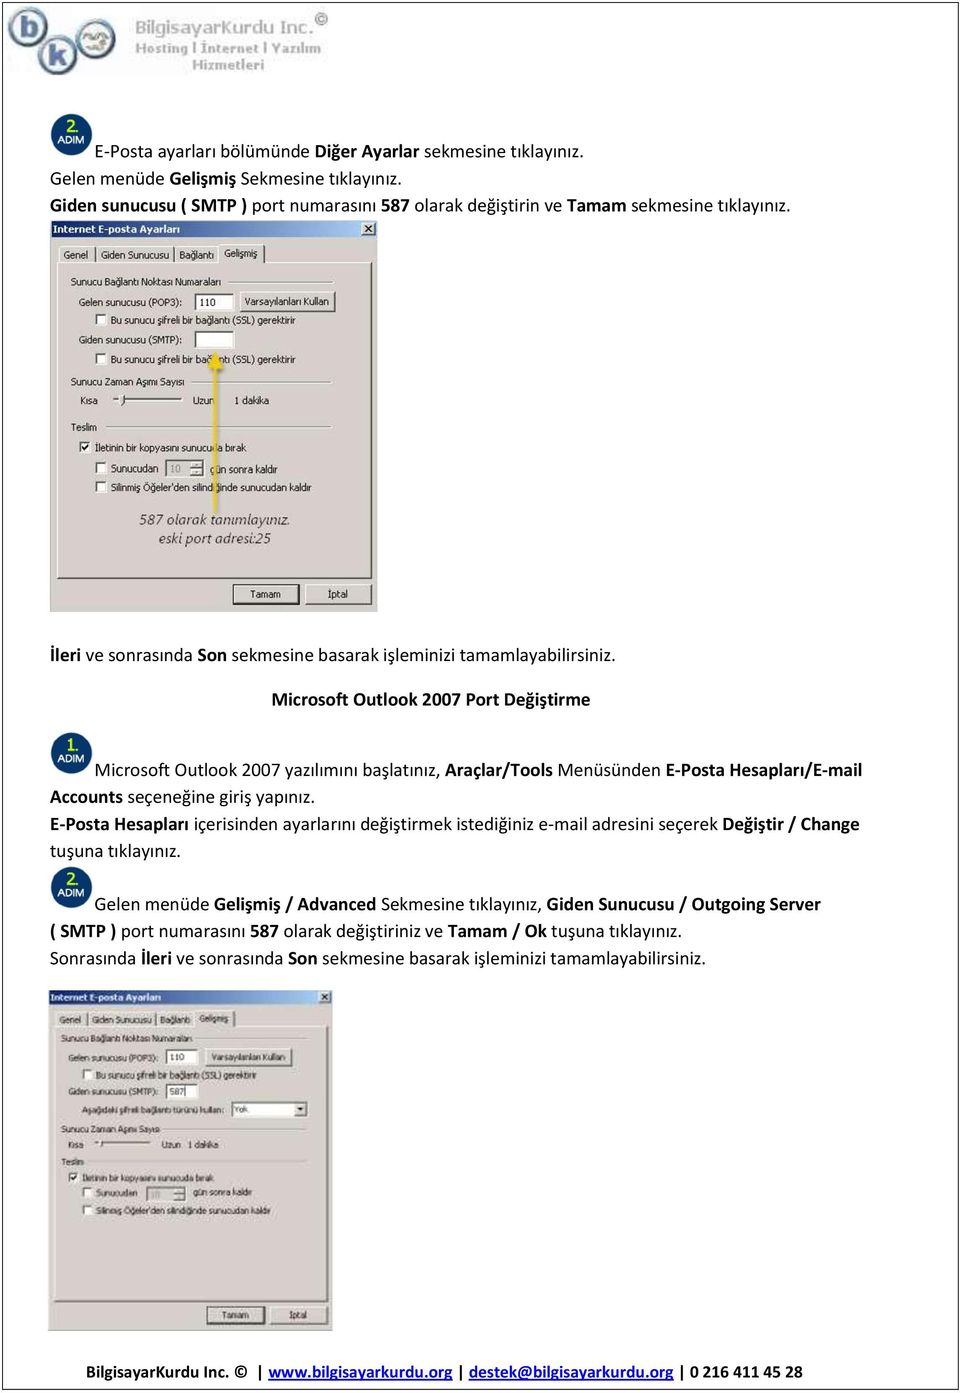 Microsoft Outlook 2007 Port Değiştirme Microsoft Outlook 2007 yazılımını başlatınız, Araçlar/Tools Menüsünden E-Posta Hesapları/E-mail Accounts seçeneğine giriş yapınız.